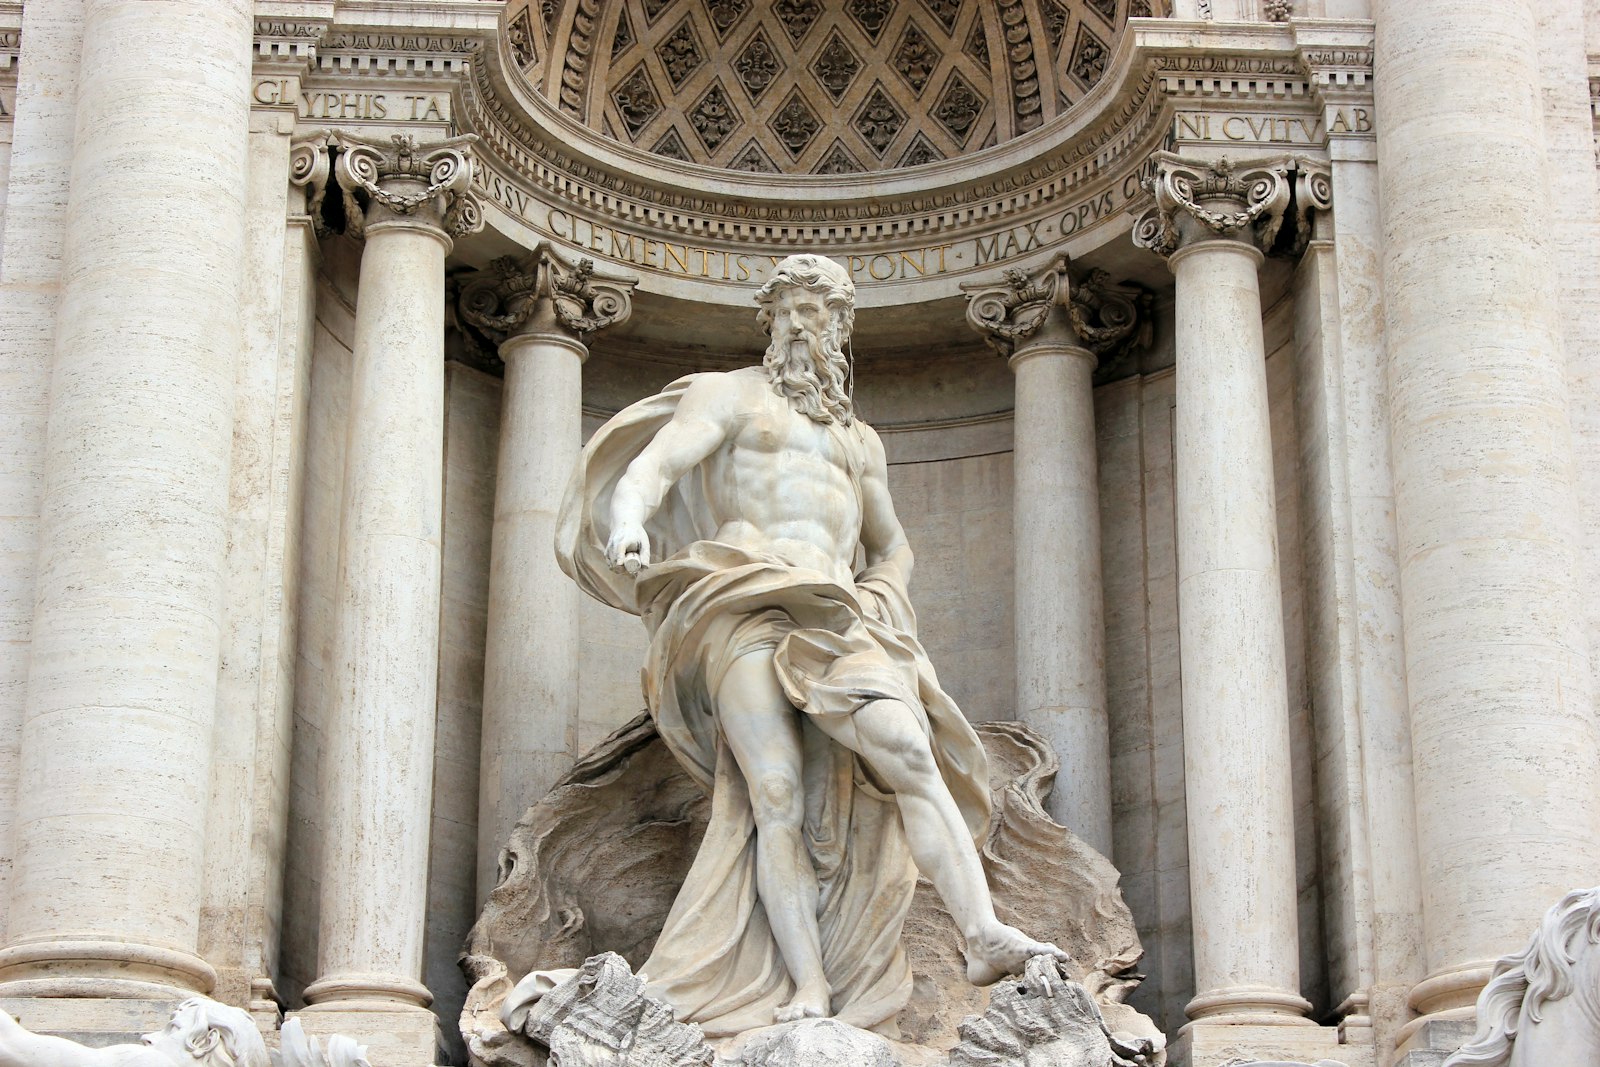 Oceanus Statue at Trevi Fountain Rome